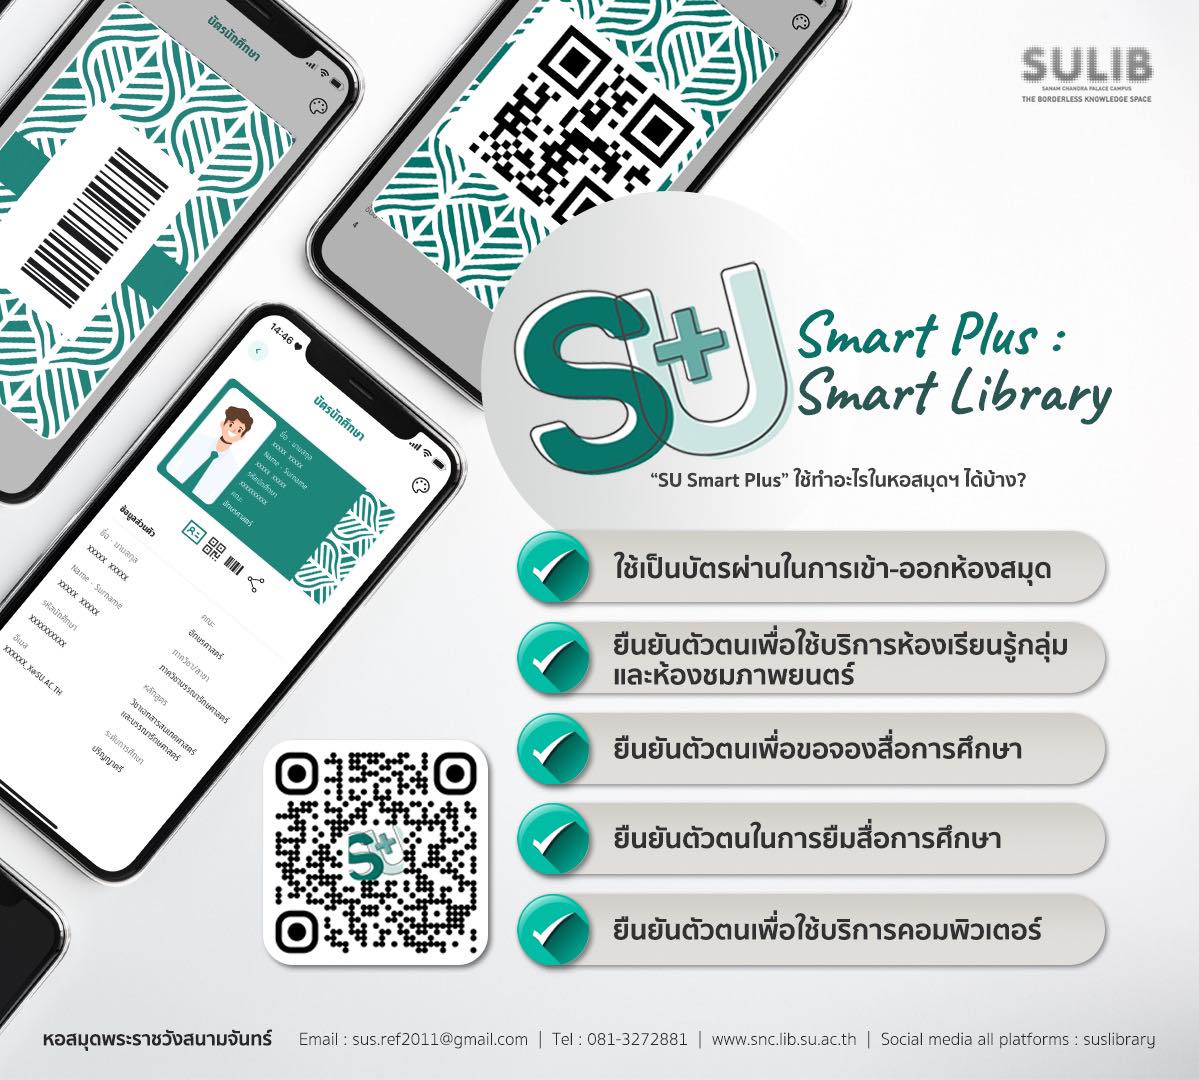 SU Smart Plus : SU Smart Library 🪪